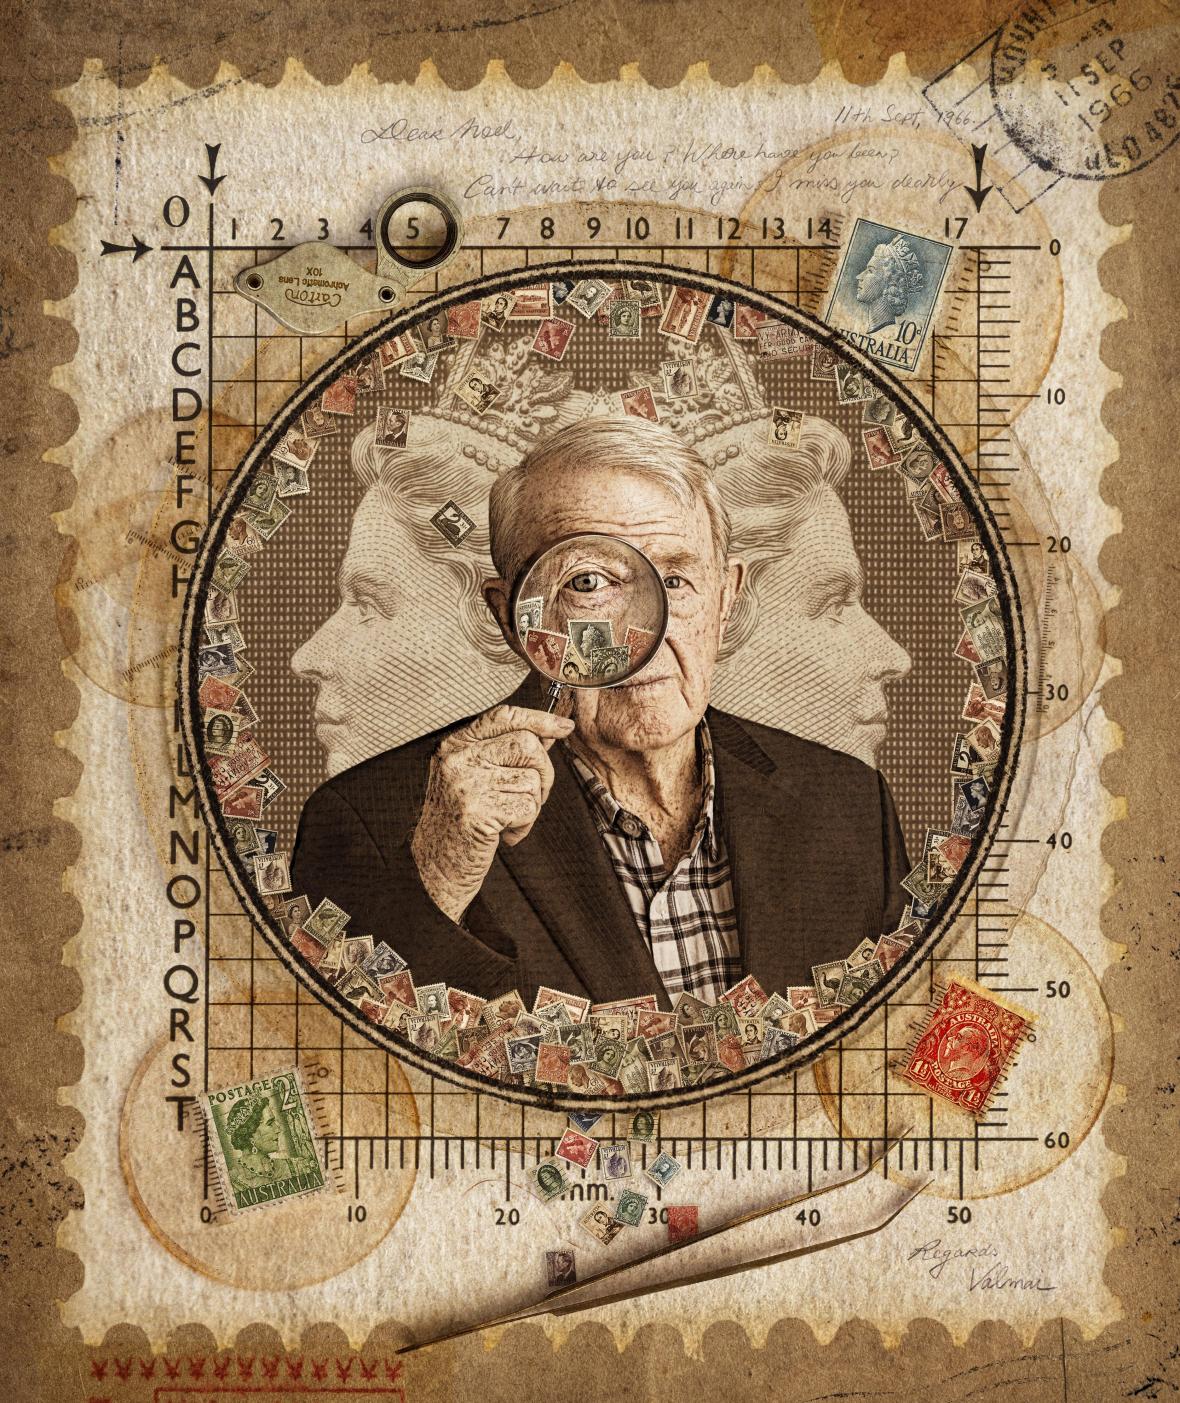 Ο συλλέκτης Νόελ φωτογραφίζεται ανάμεσα στα αγαπημένα του γραμματόσημα. Η επεξεργασμένη εικόνα του Νόελ κέρδισε τη δεύτερη θέση στην κατηγορία «Ιστορία ενός Πορτρέτου»